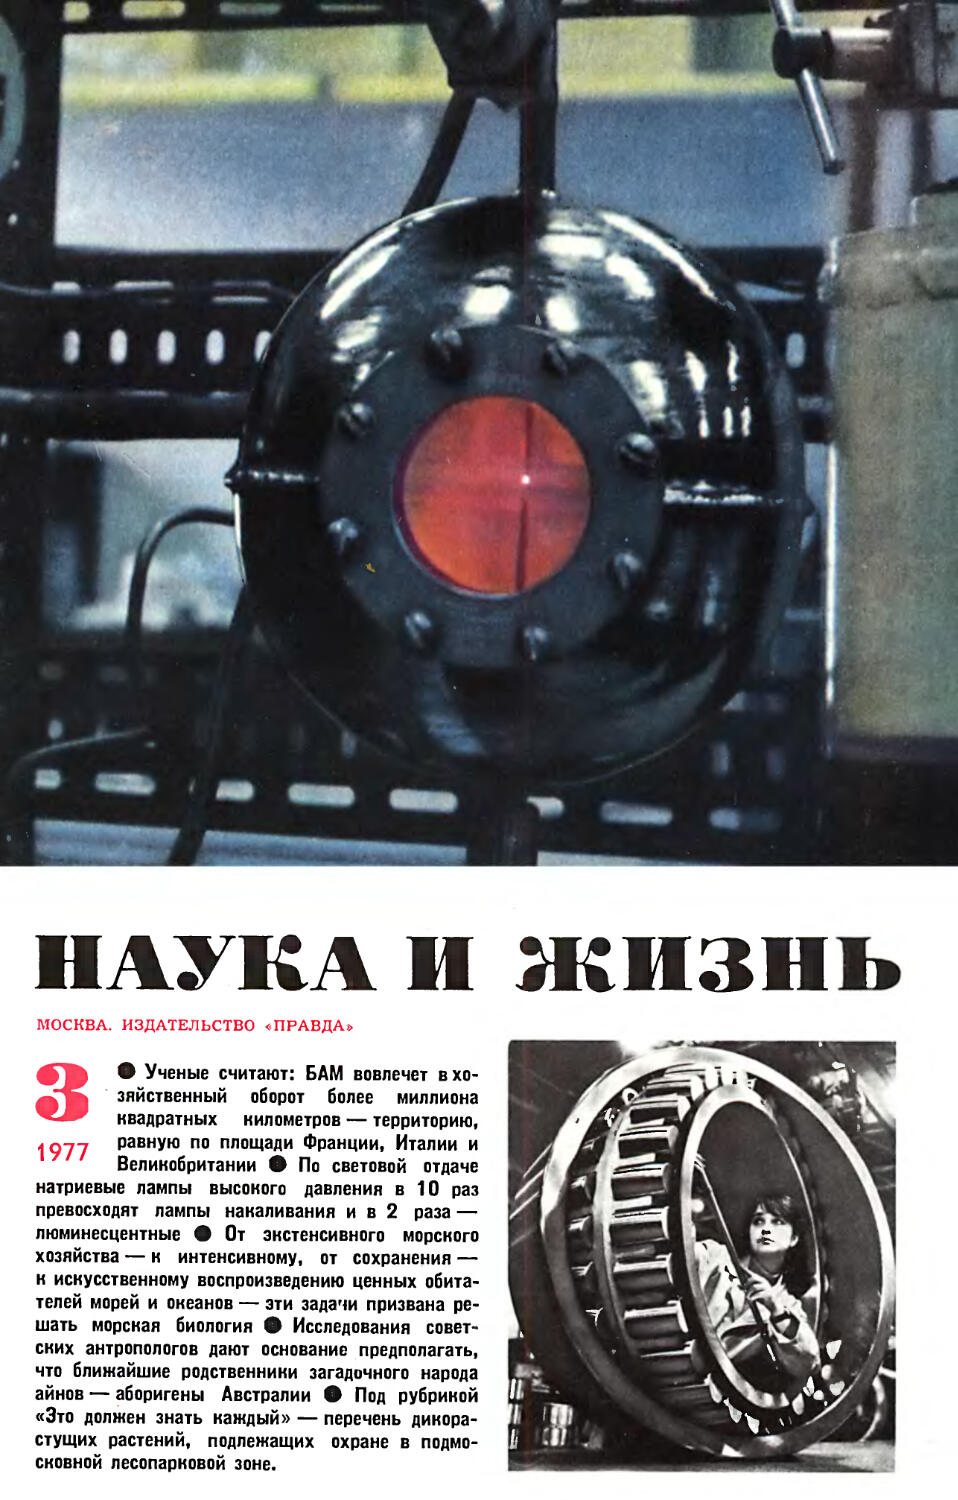 [Обложка]
Фото А. Когана — Первый Государственный подшипниковый завод. Контроль размеров крупногабаритного подшипника.